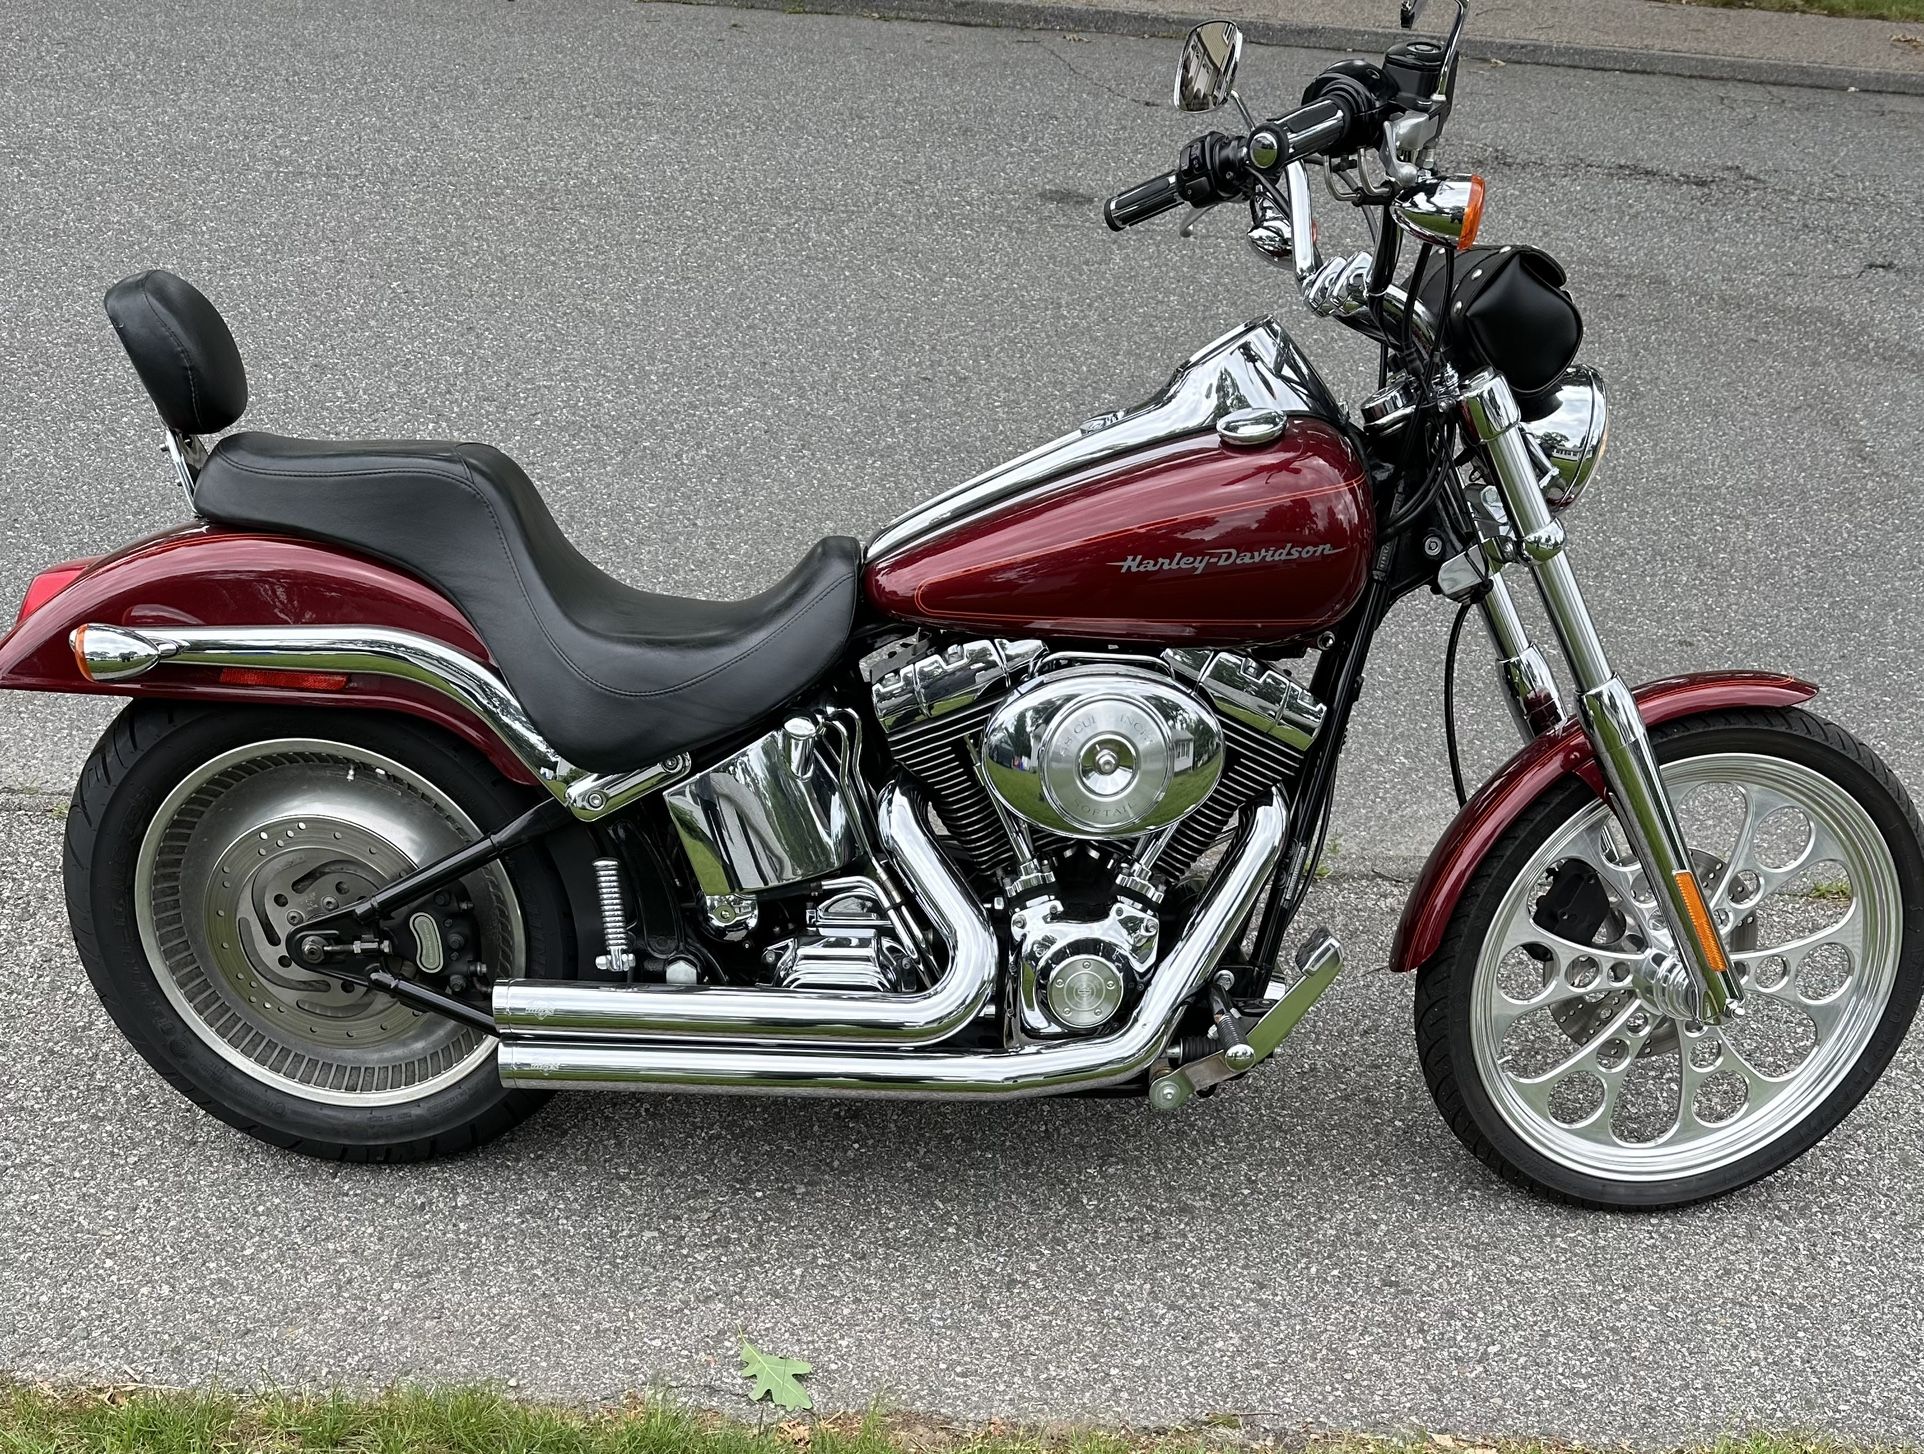 2001 Harley Davidson Softail